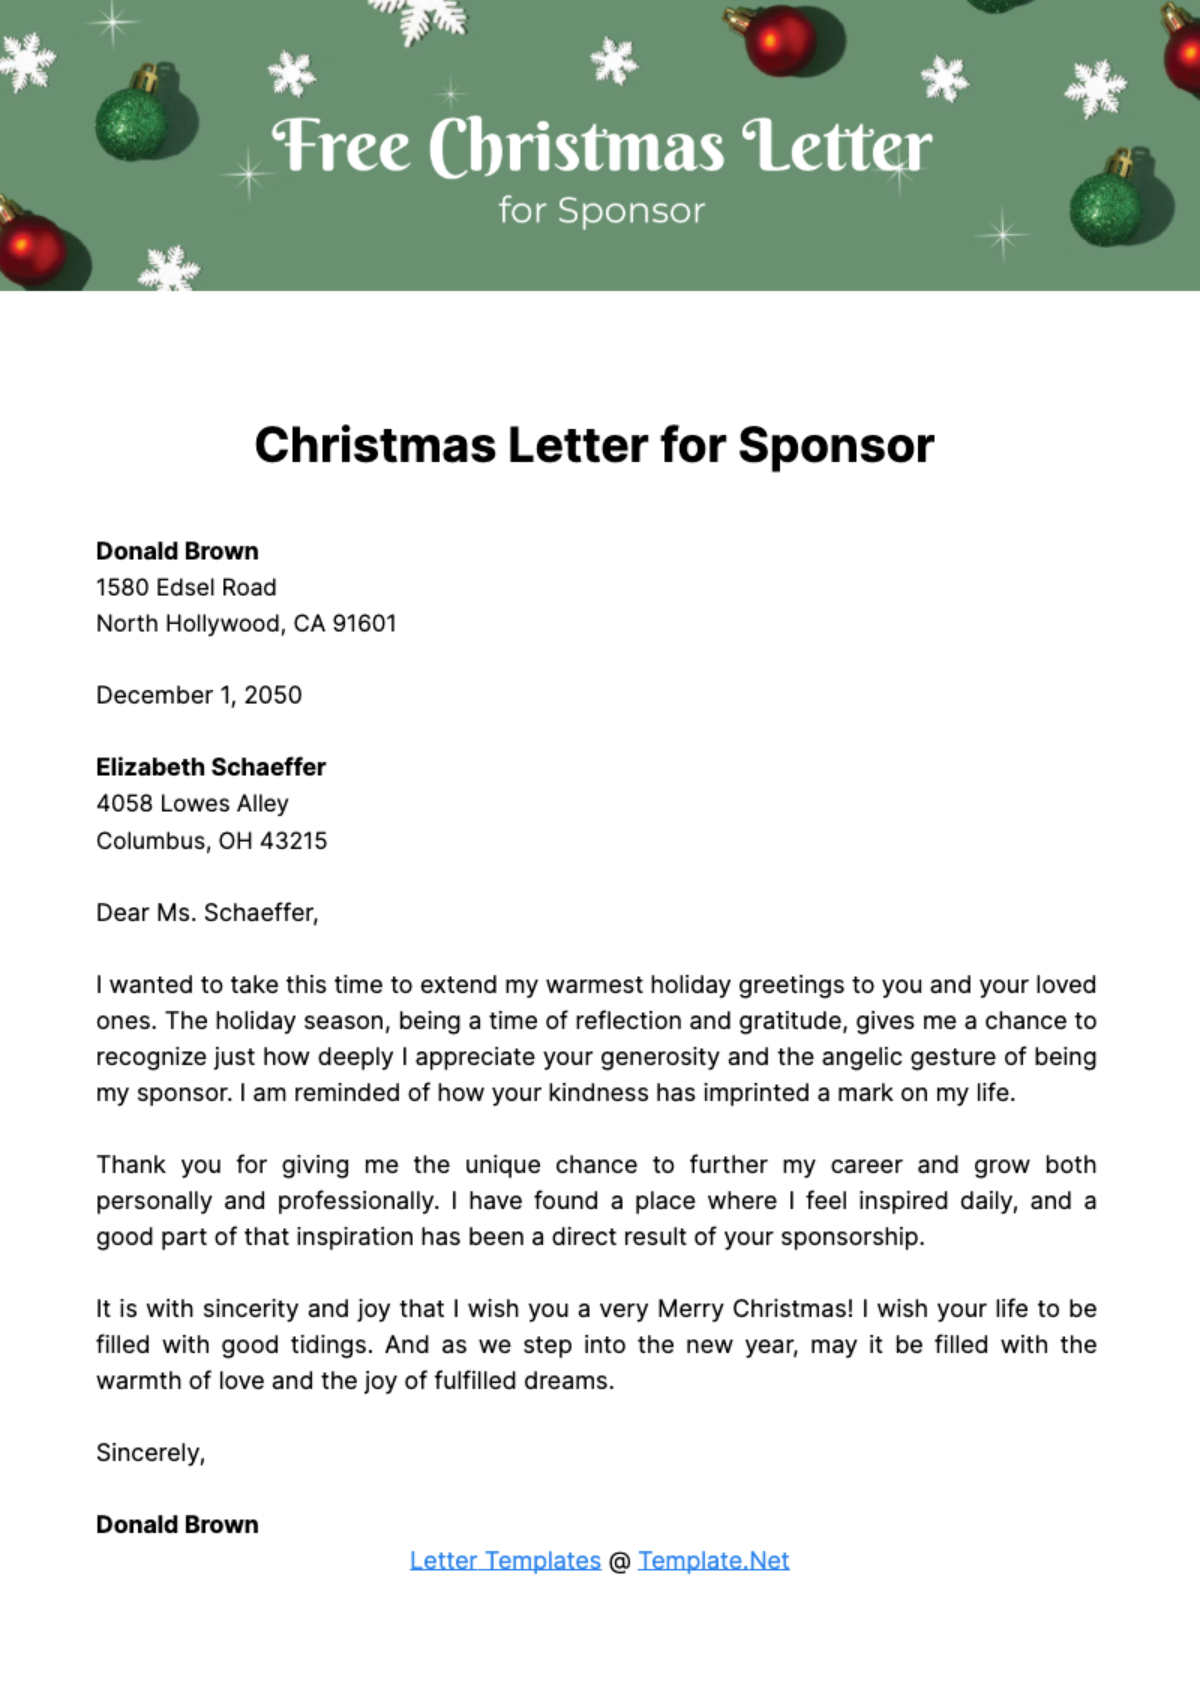 Free Christmas Letter for Sponsor Template